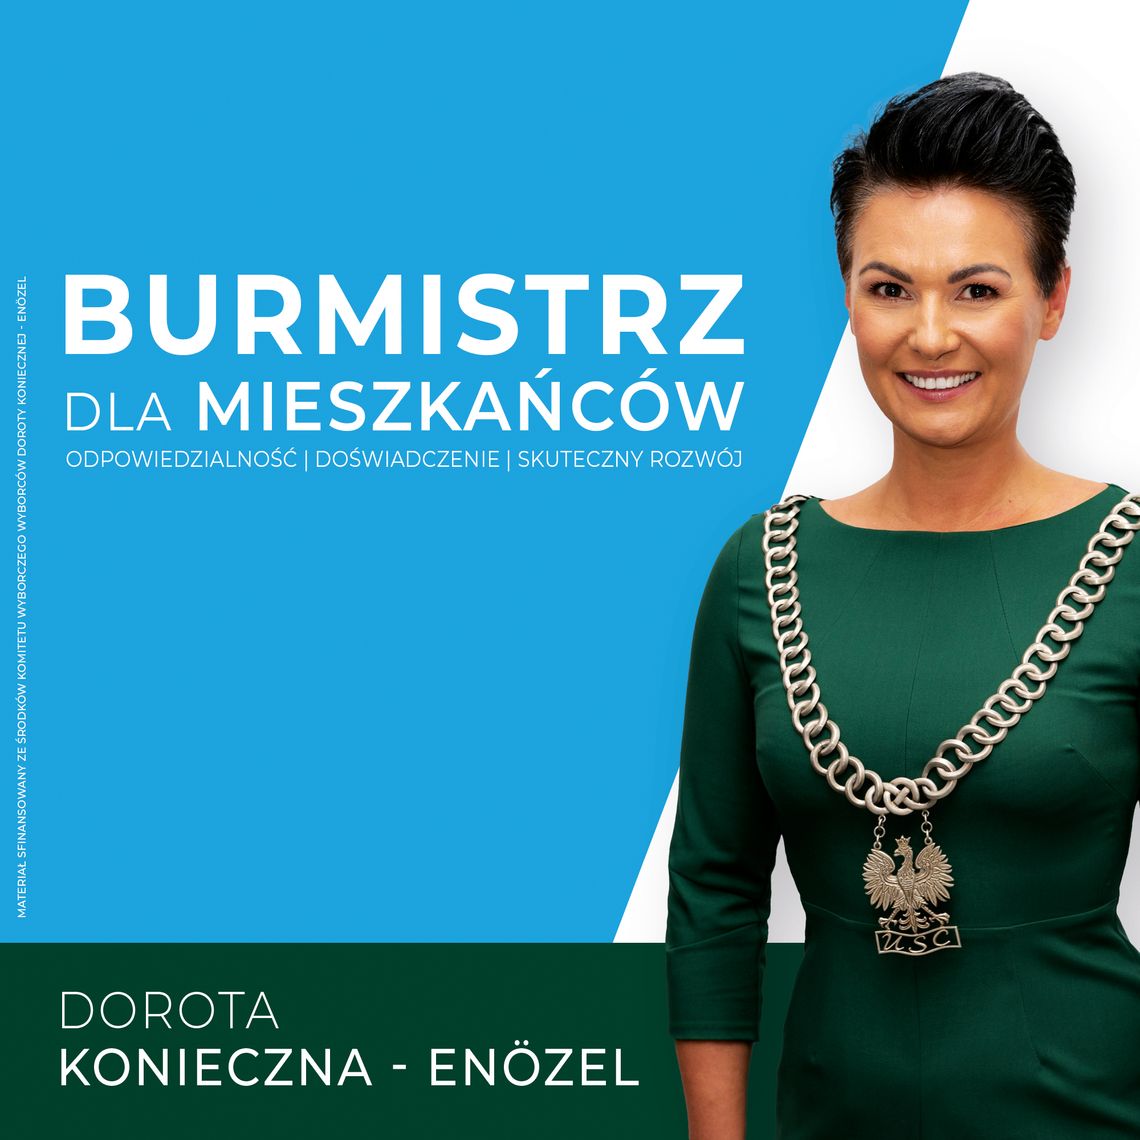 Nieoficjalnie Dorota Konieczna-Enozel zostaje na kolejną kadencję burmistrzem Pieszyc